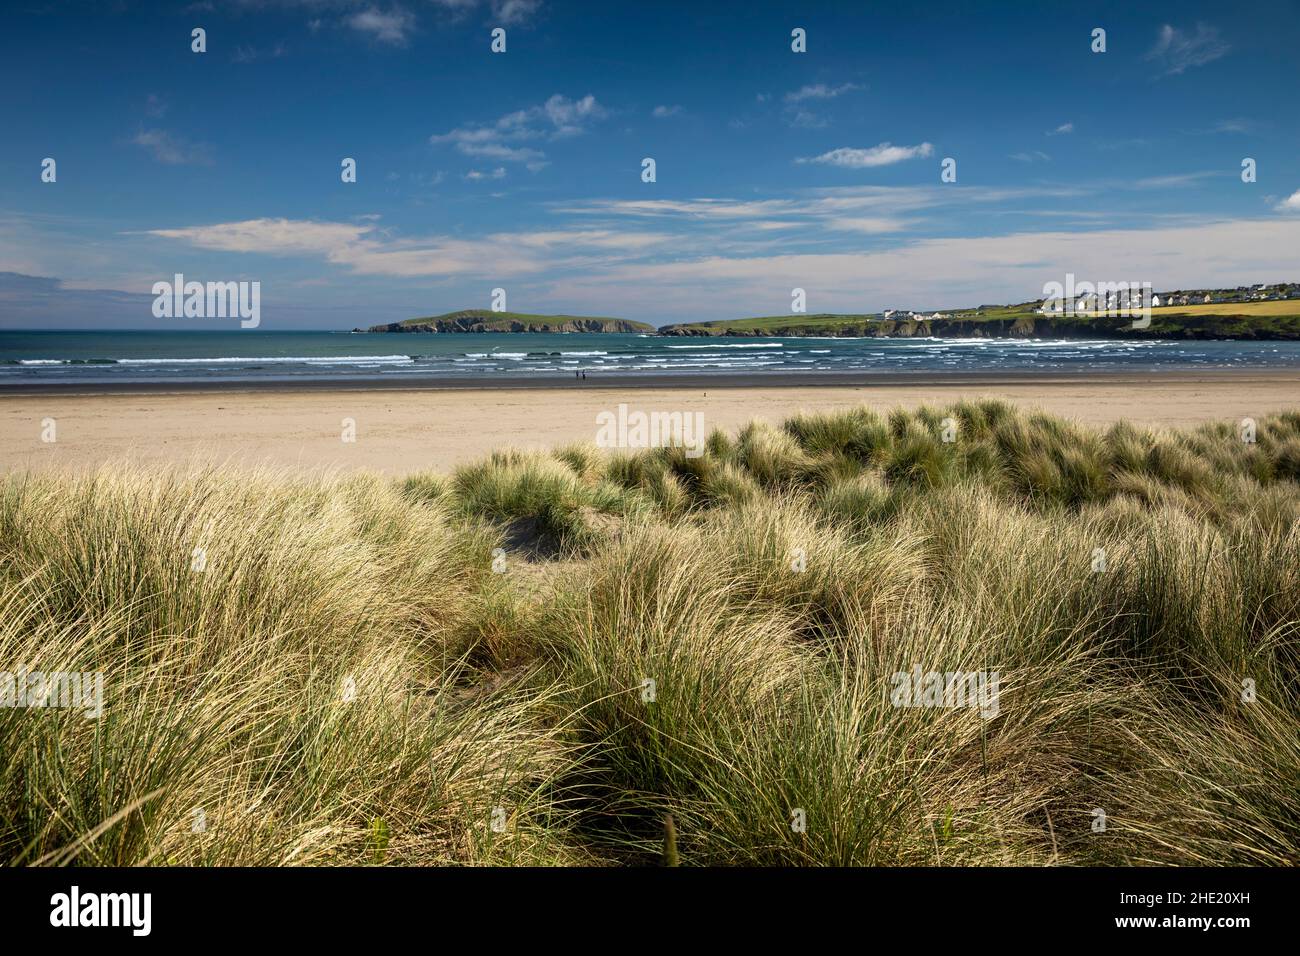 Regno Unito, Galles, Pembrokeshire, Poppit Sands, dune sull'estuario del fiume Teifi Foto Stock